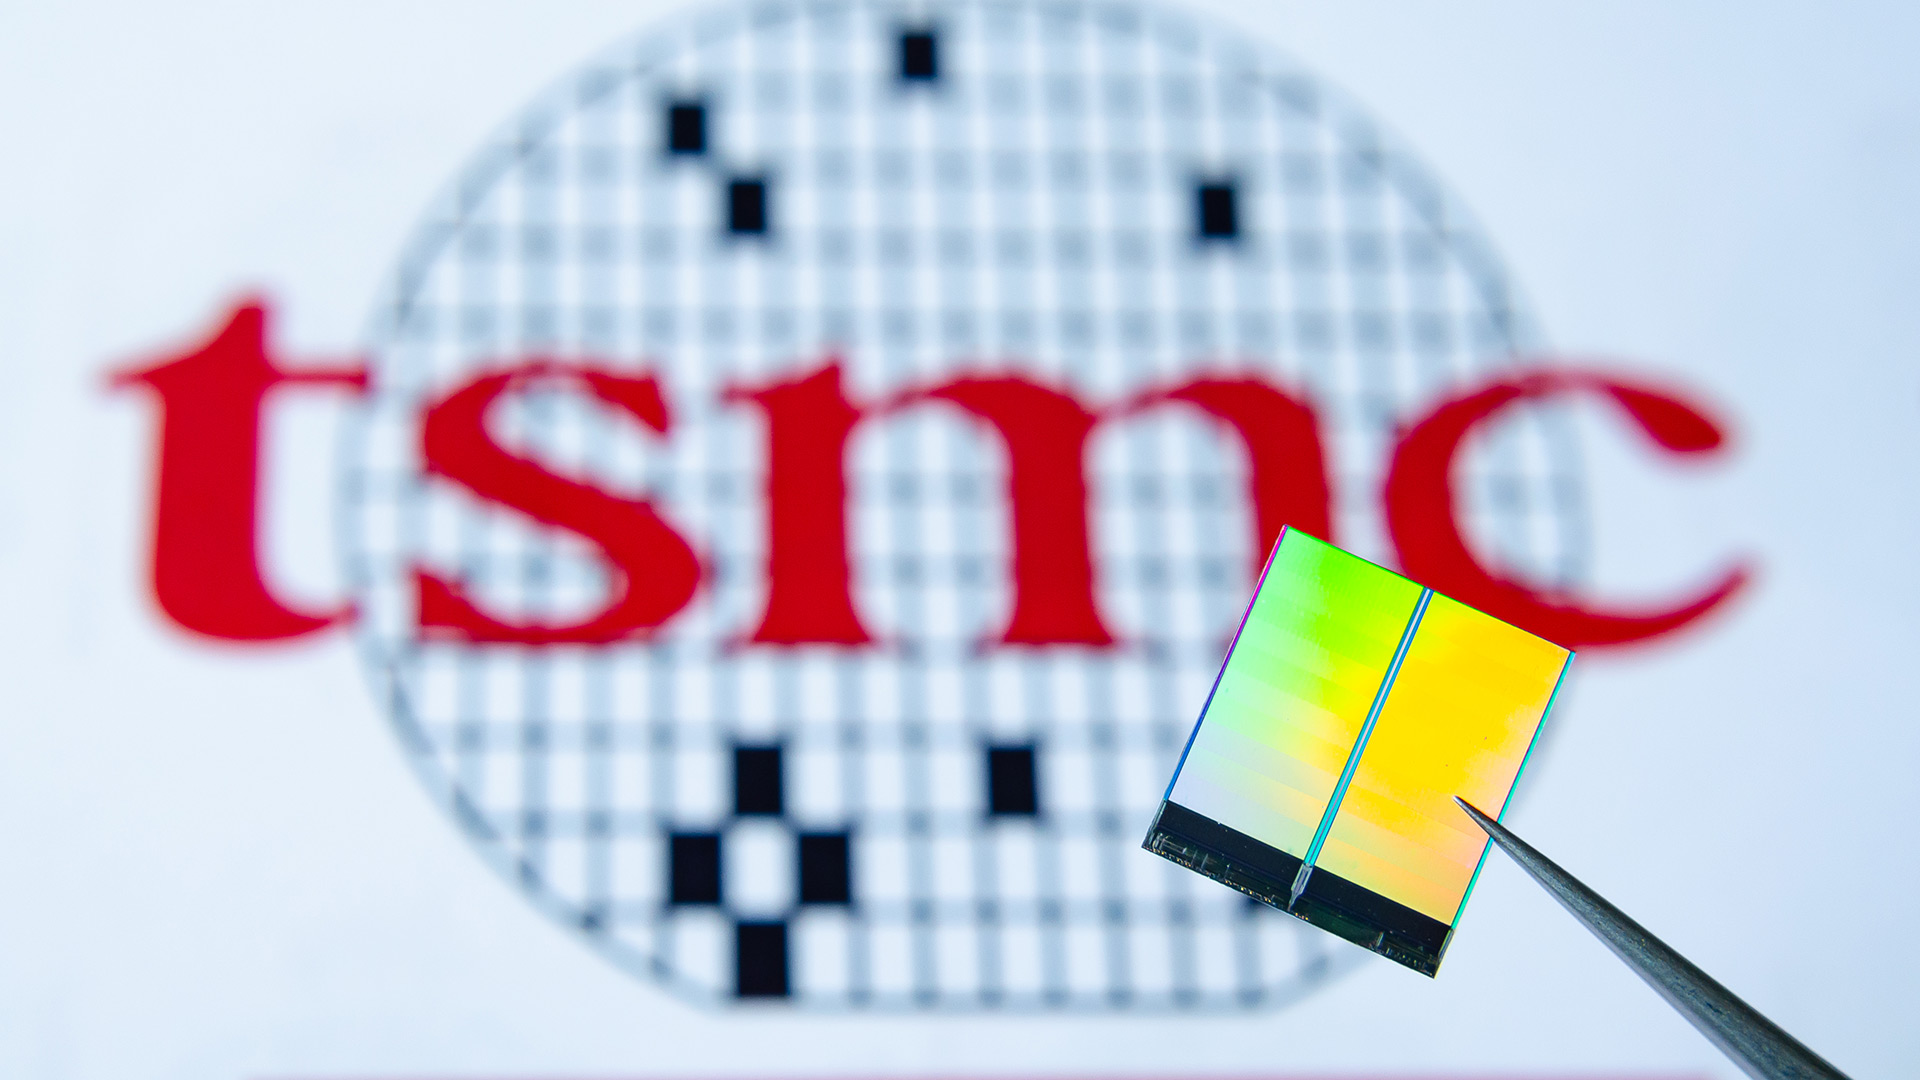 TSMCk litografia sartzeko planak berretsi zituen 4 nm